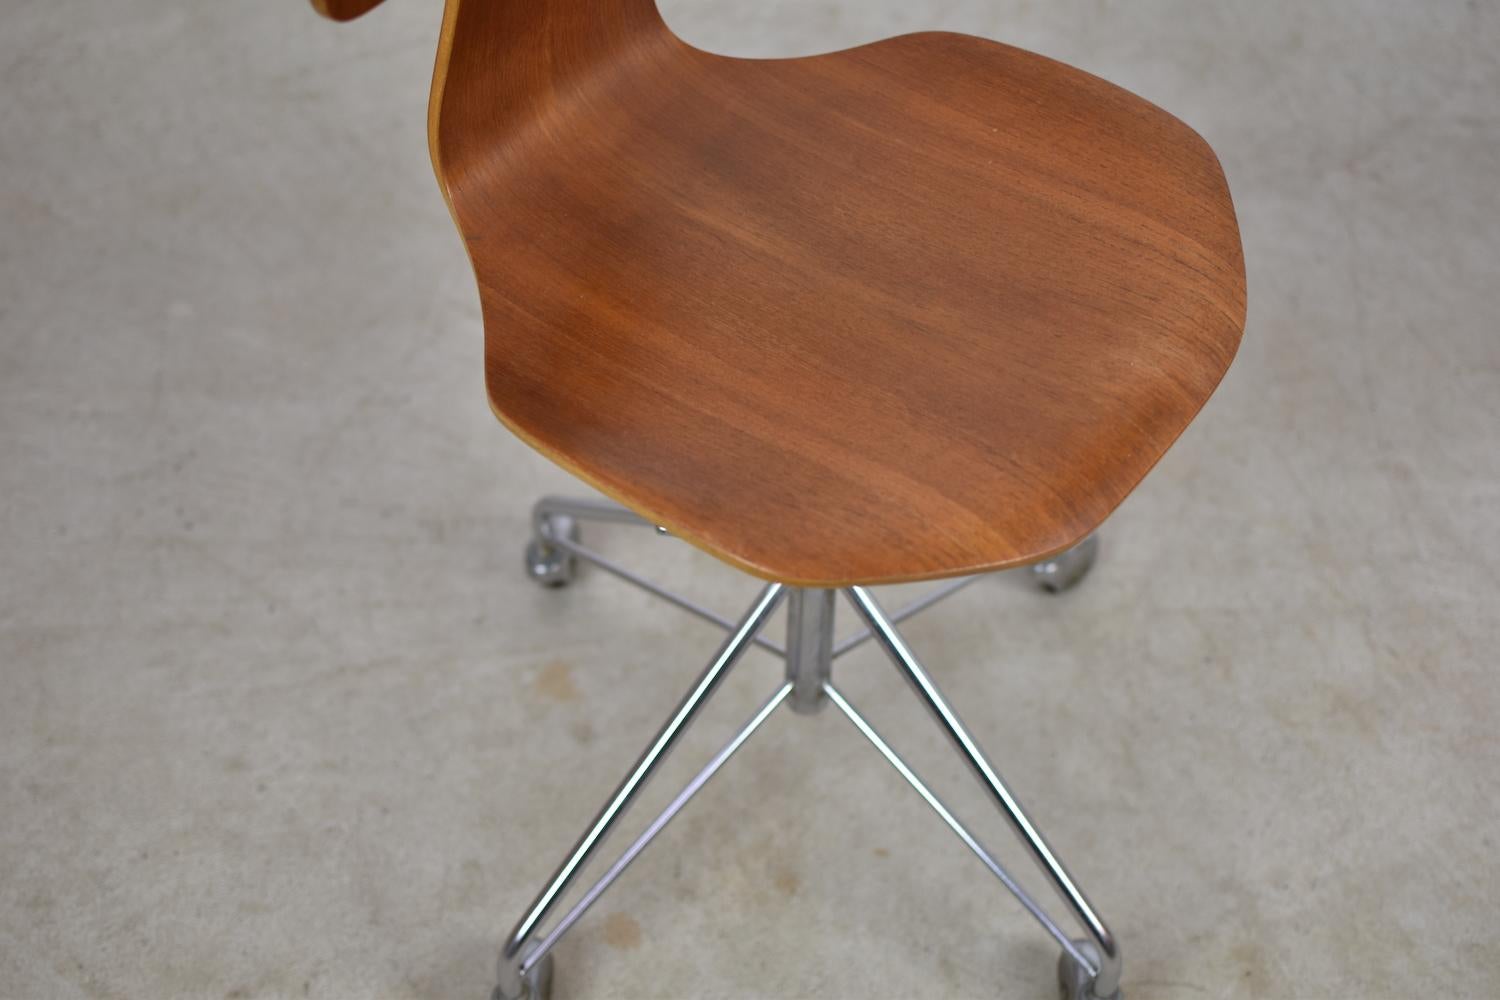 Mid-20th Century 'Hammer' Desk Chair Designed by Arne Jacobsen for Fritz Hansen, Denmark, 1950s